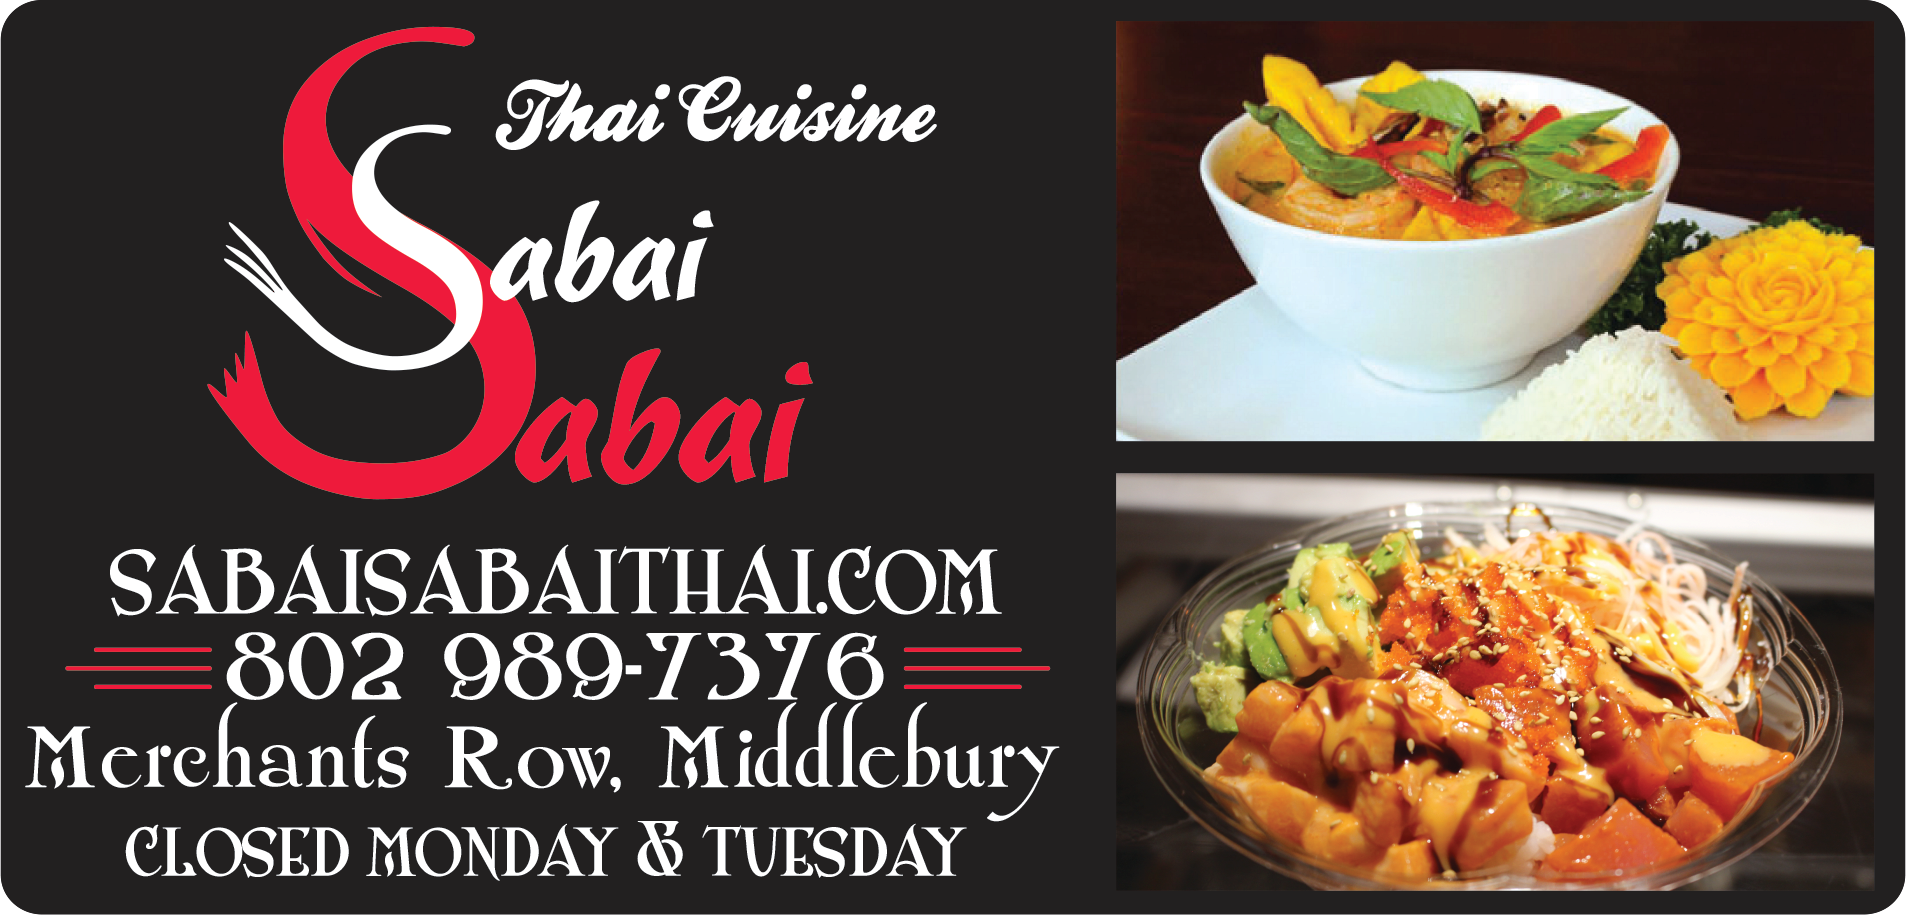 Sabai Sabai Restaurant Print Ad